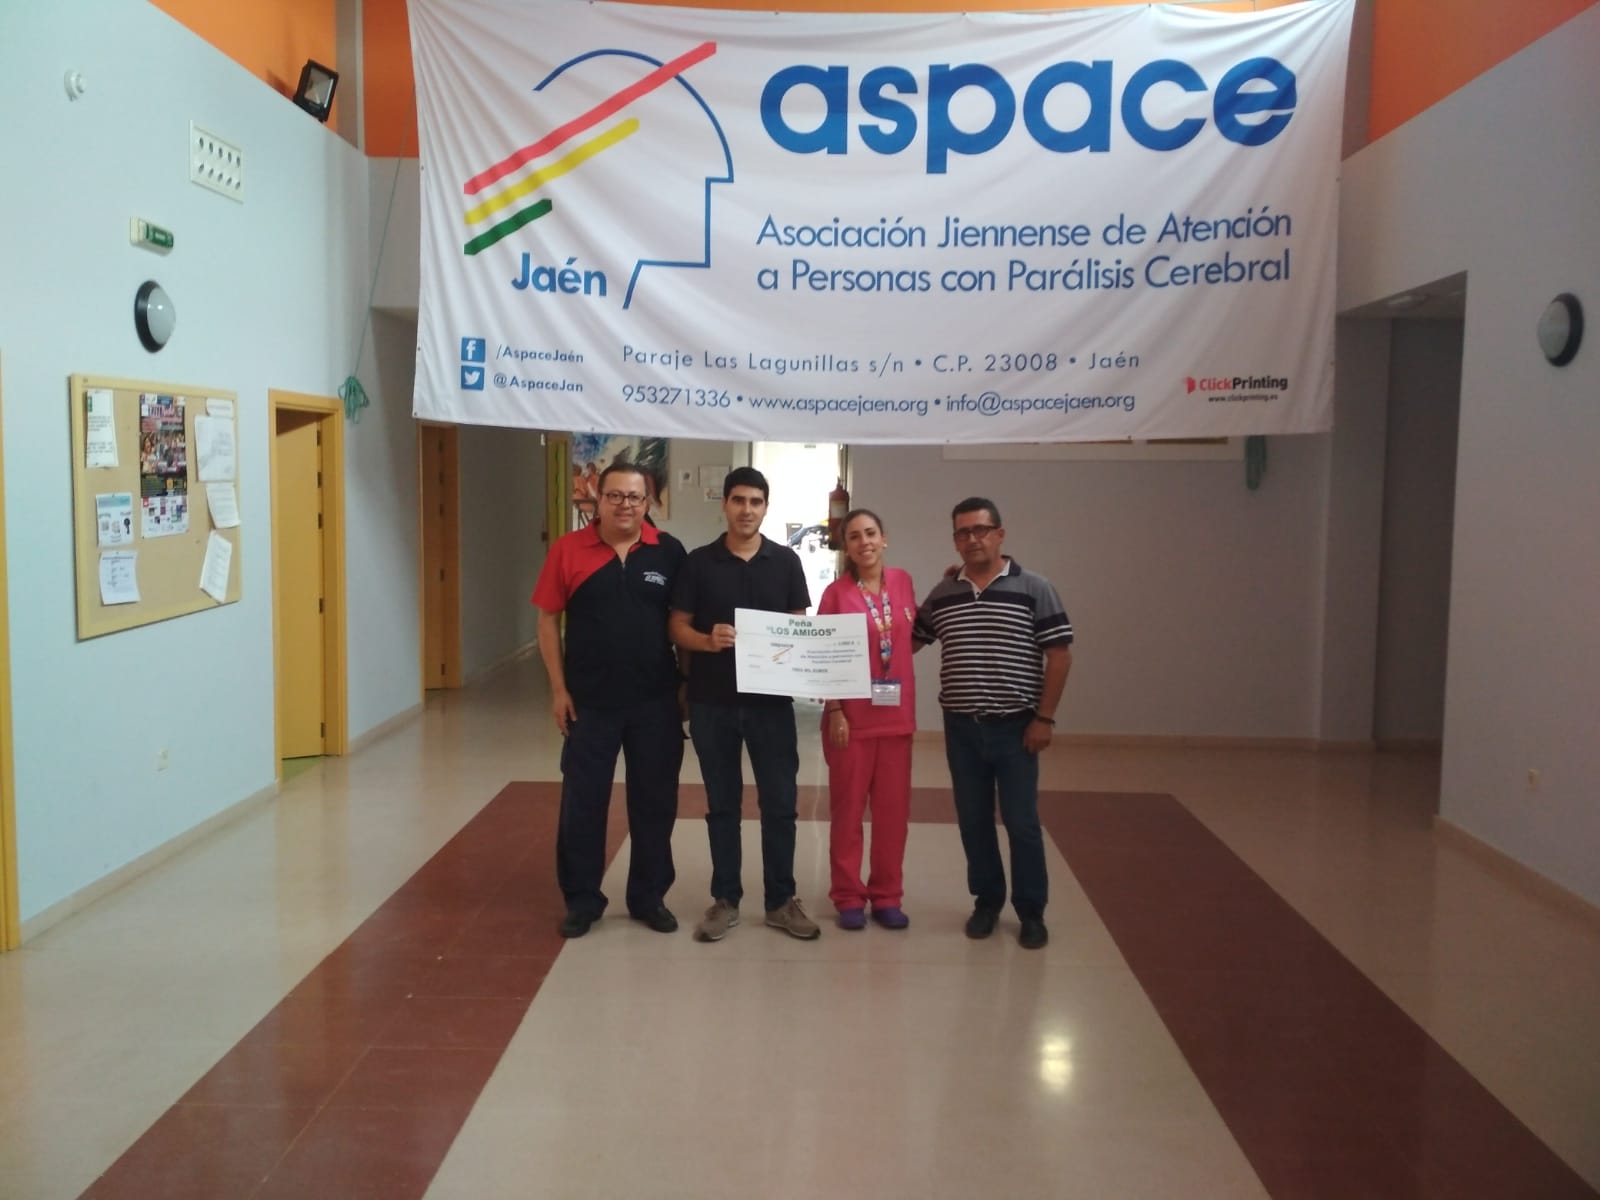 La peña “Los amigos” de Martos, Solidarios con Aspace Jaén